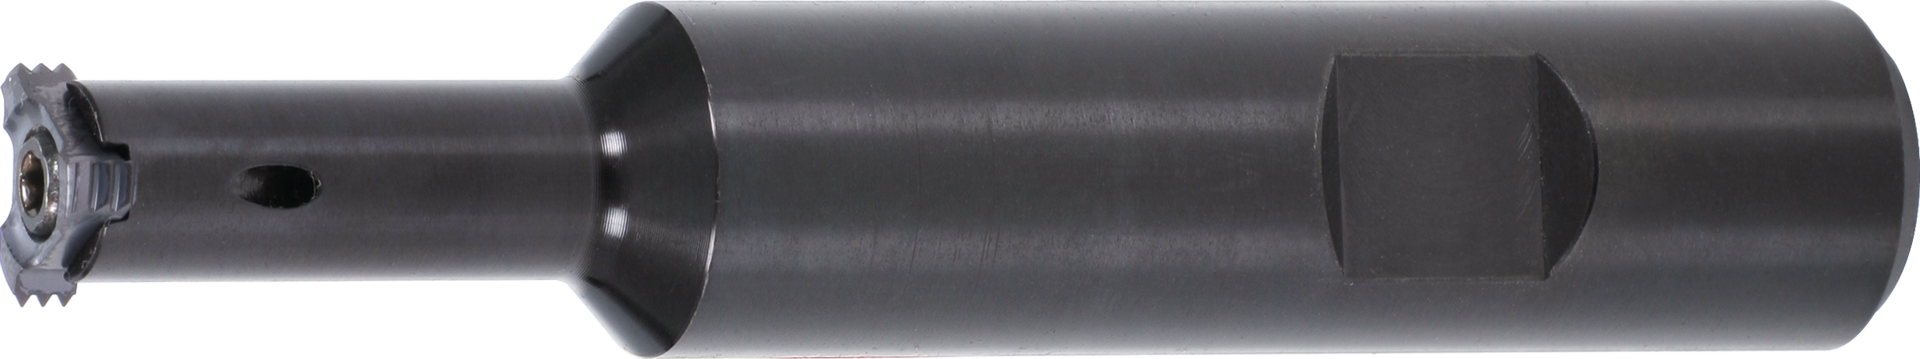 Vertikal-Wendeschneidplatten-Gewindefräshalter Stahl GL140mm IK WN D17,8mm NL74mm